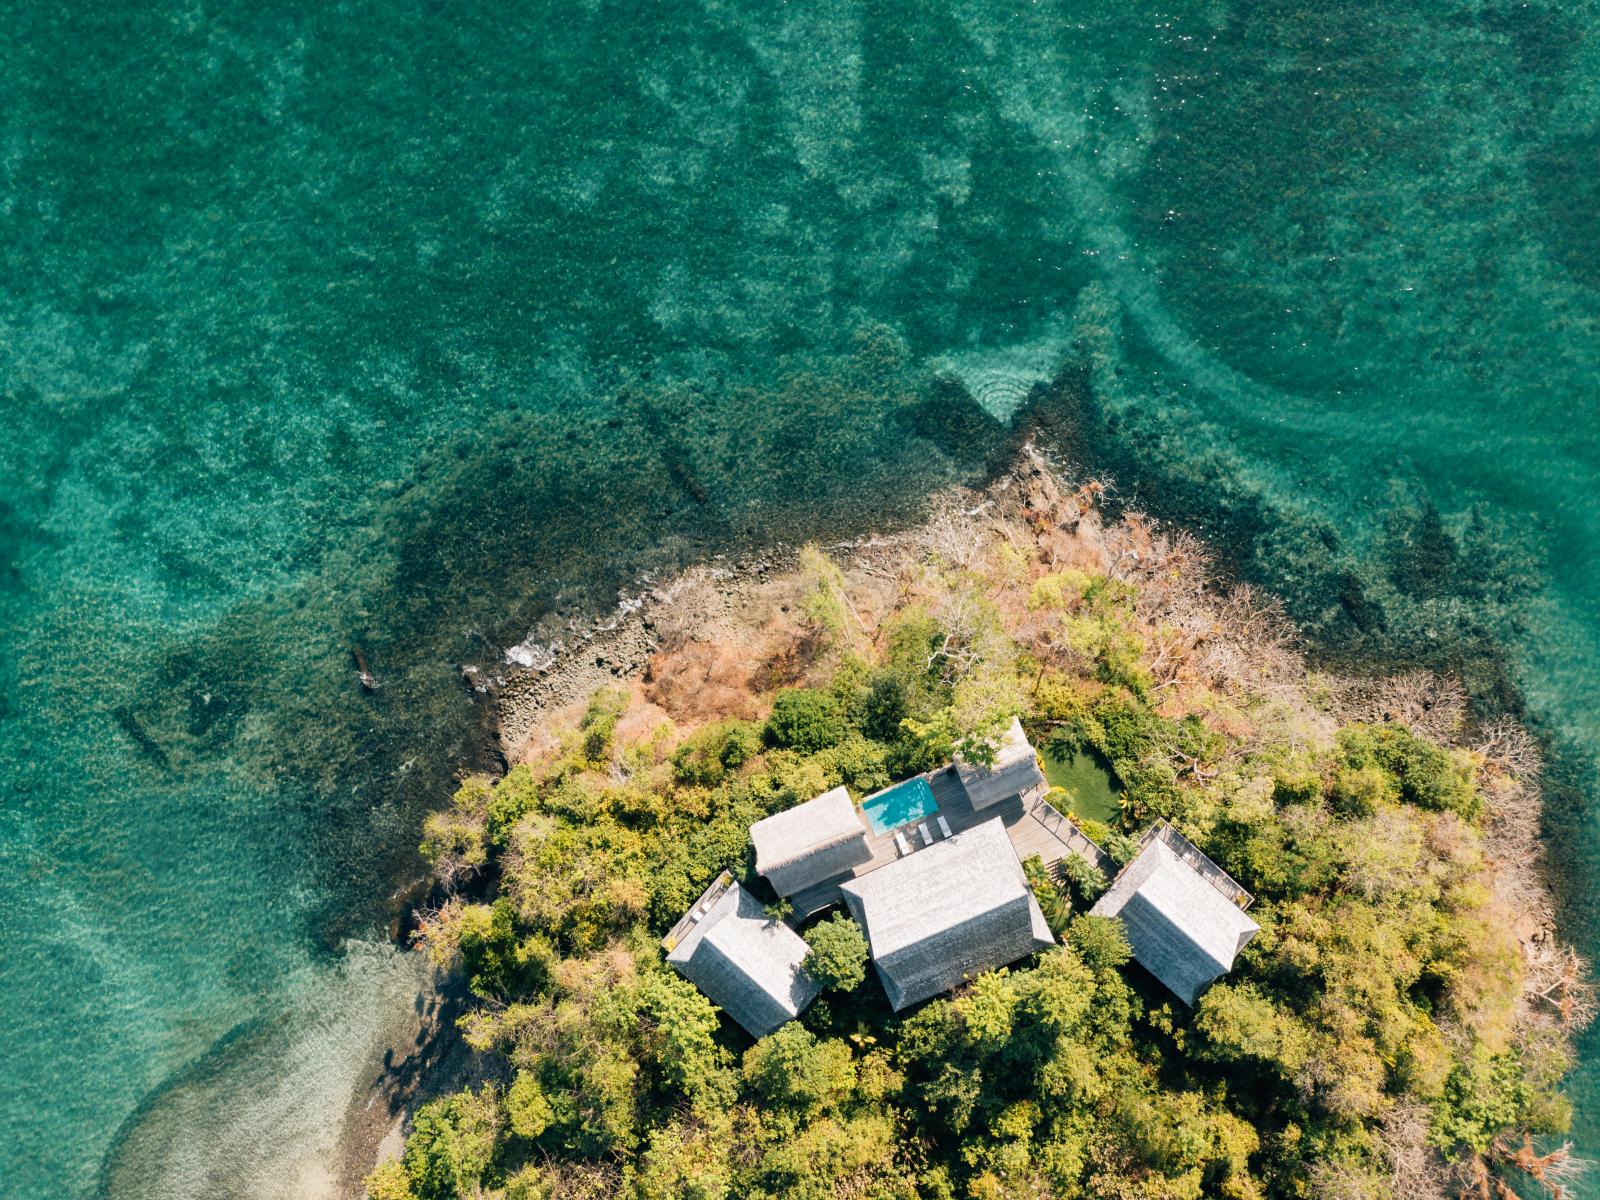 Islas Secas Casita Grande aerial view